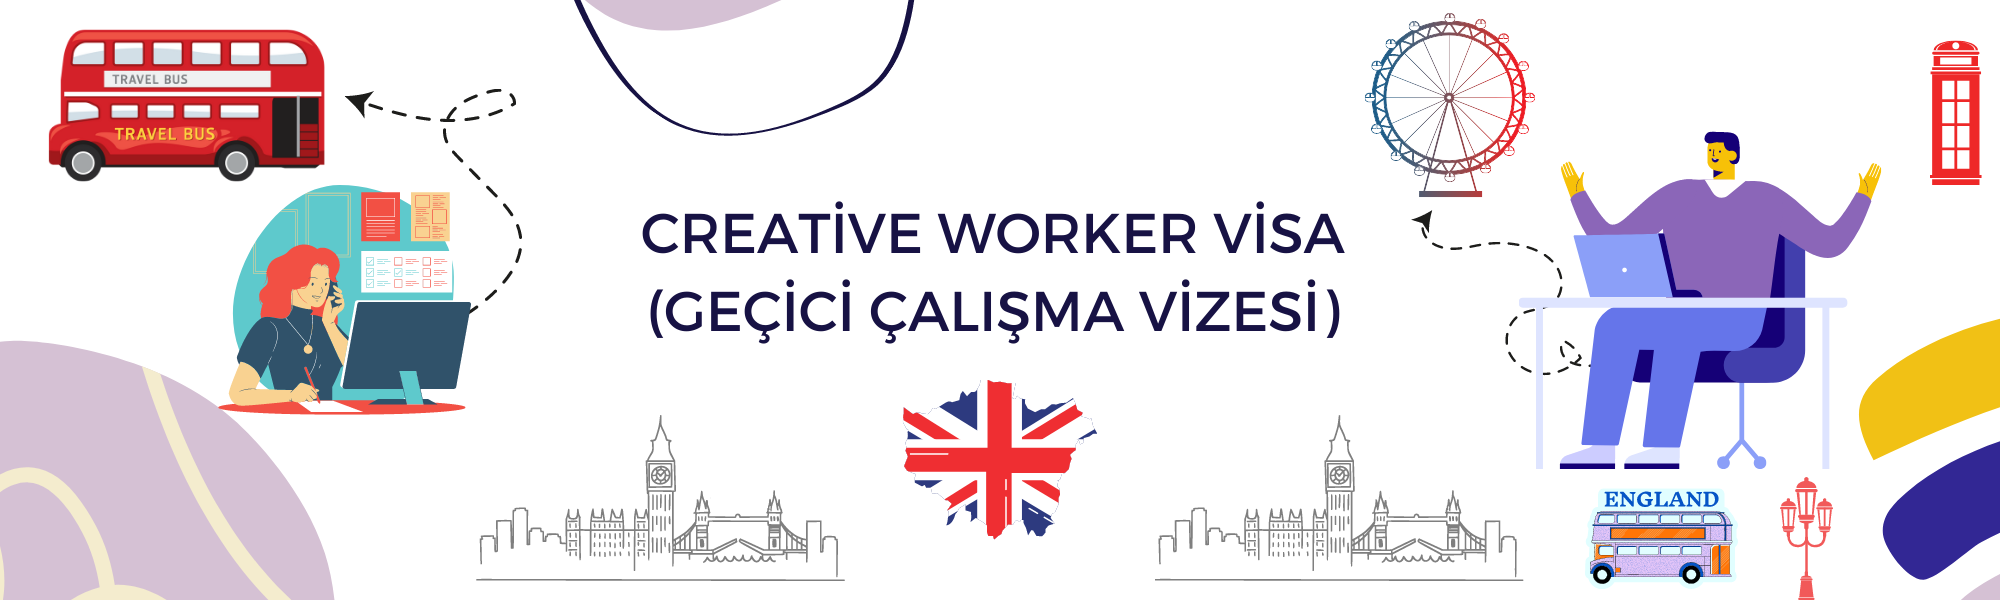 Creative Worker Visa Geçici Çalışma Vizesi